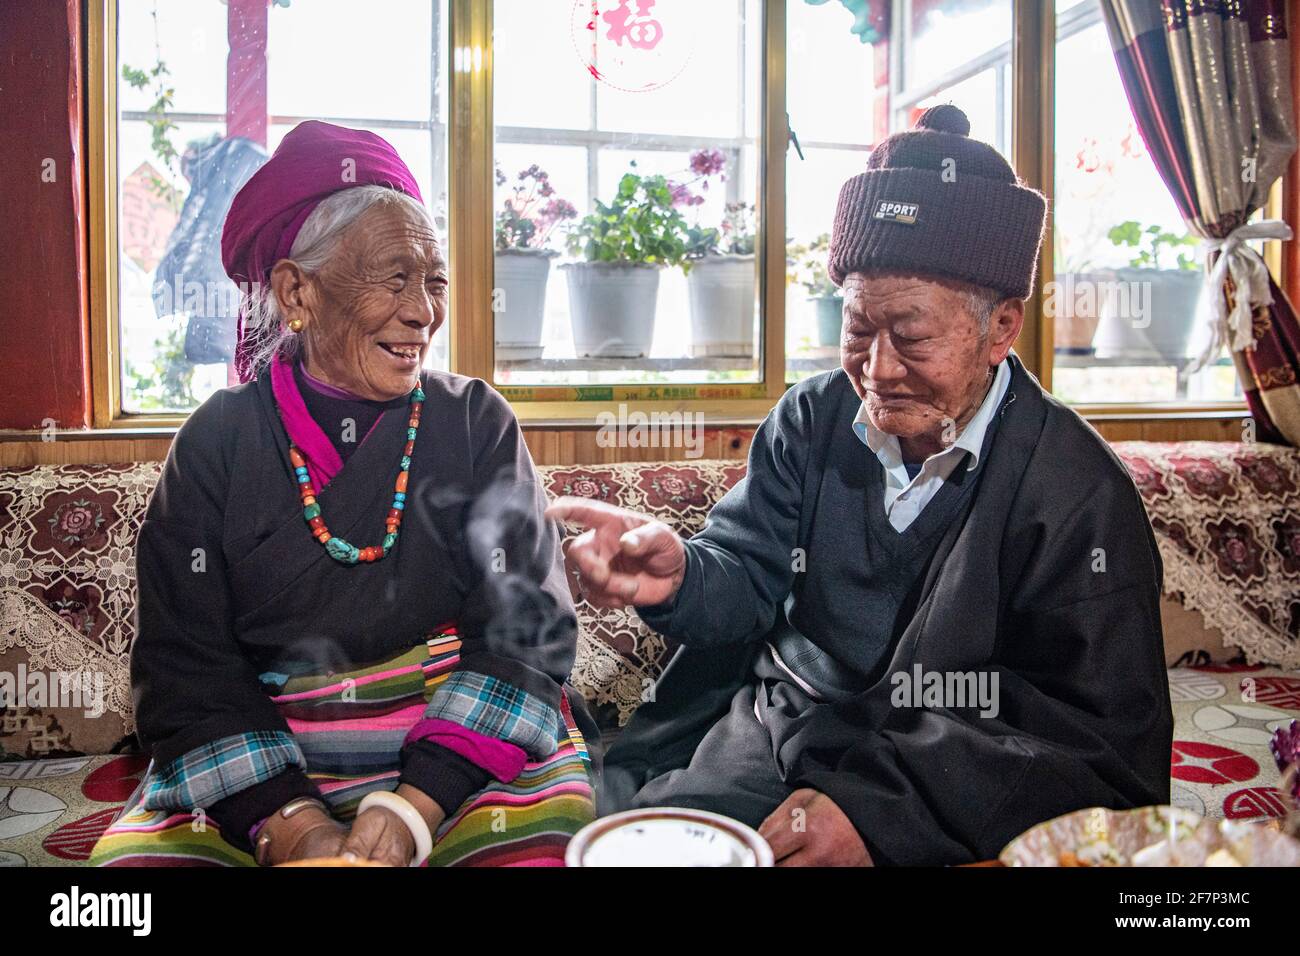 (210409) -- LHASA, 9 aprile 2021 (Xinhua) -- Ngawang Nyima chiacchiera con sua moglie nella loro residenza a Qamdo City, regione Autonoma del Tibet della Cina sudoccidentale, 18 febbraio 2021. Ngawang Nyima, 84 anni, è nato a Naixi Township, nella contea di Mangkam, nella città di Qamdo, nella regione autonoma del Tibet della Cina sudoccidentale, ed era un serf. Carico di pesanti tasse, iniziò a gregge di pecore per i padroni di casa quando non aveva più di otto anni, e fu costretto a prelevare il bittero da una salina del fiume Lancang. Il sentiero per la saliera era così precipitoso che un singolo passo incauto ne avrebbe rovesciato uno in rapide onde nel rive Foto Stock